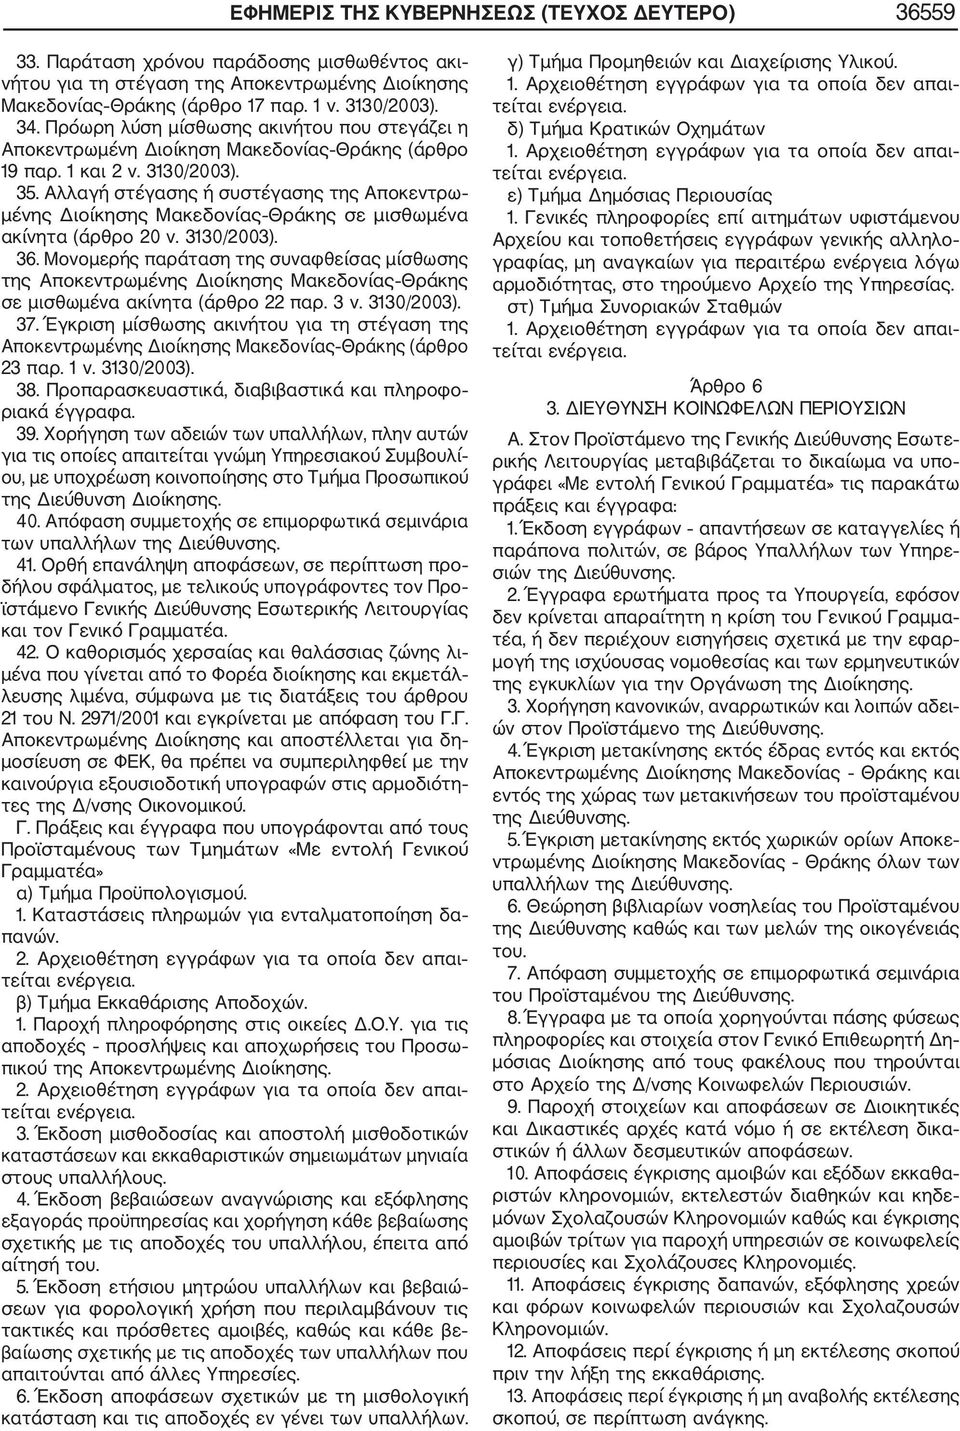 Αλλαγή στέγασης ή συστέγασης της Αποκεντρω μένης Διοίκησης Μακεδονίας Θράκης σε μισθωμένα ακίνητα (άρθρο 20 ν. 3130/2003). 36.